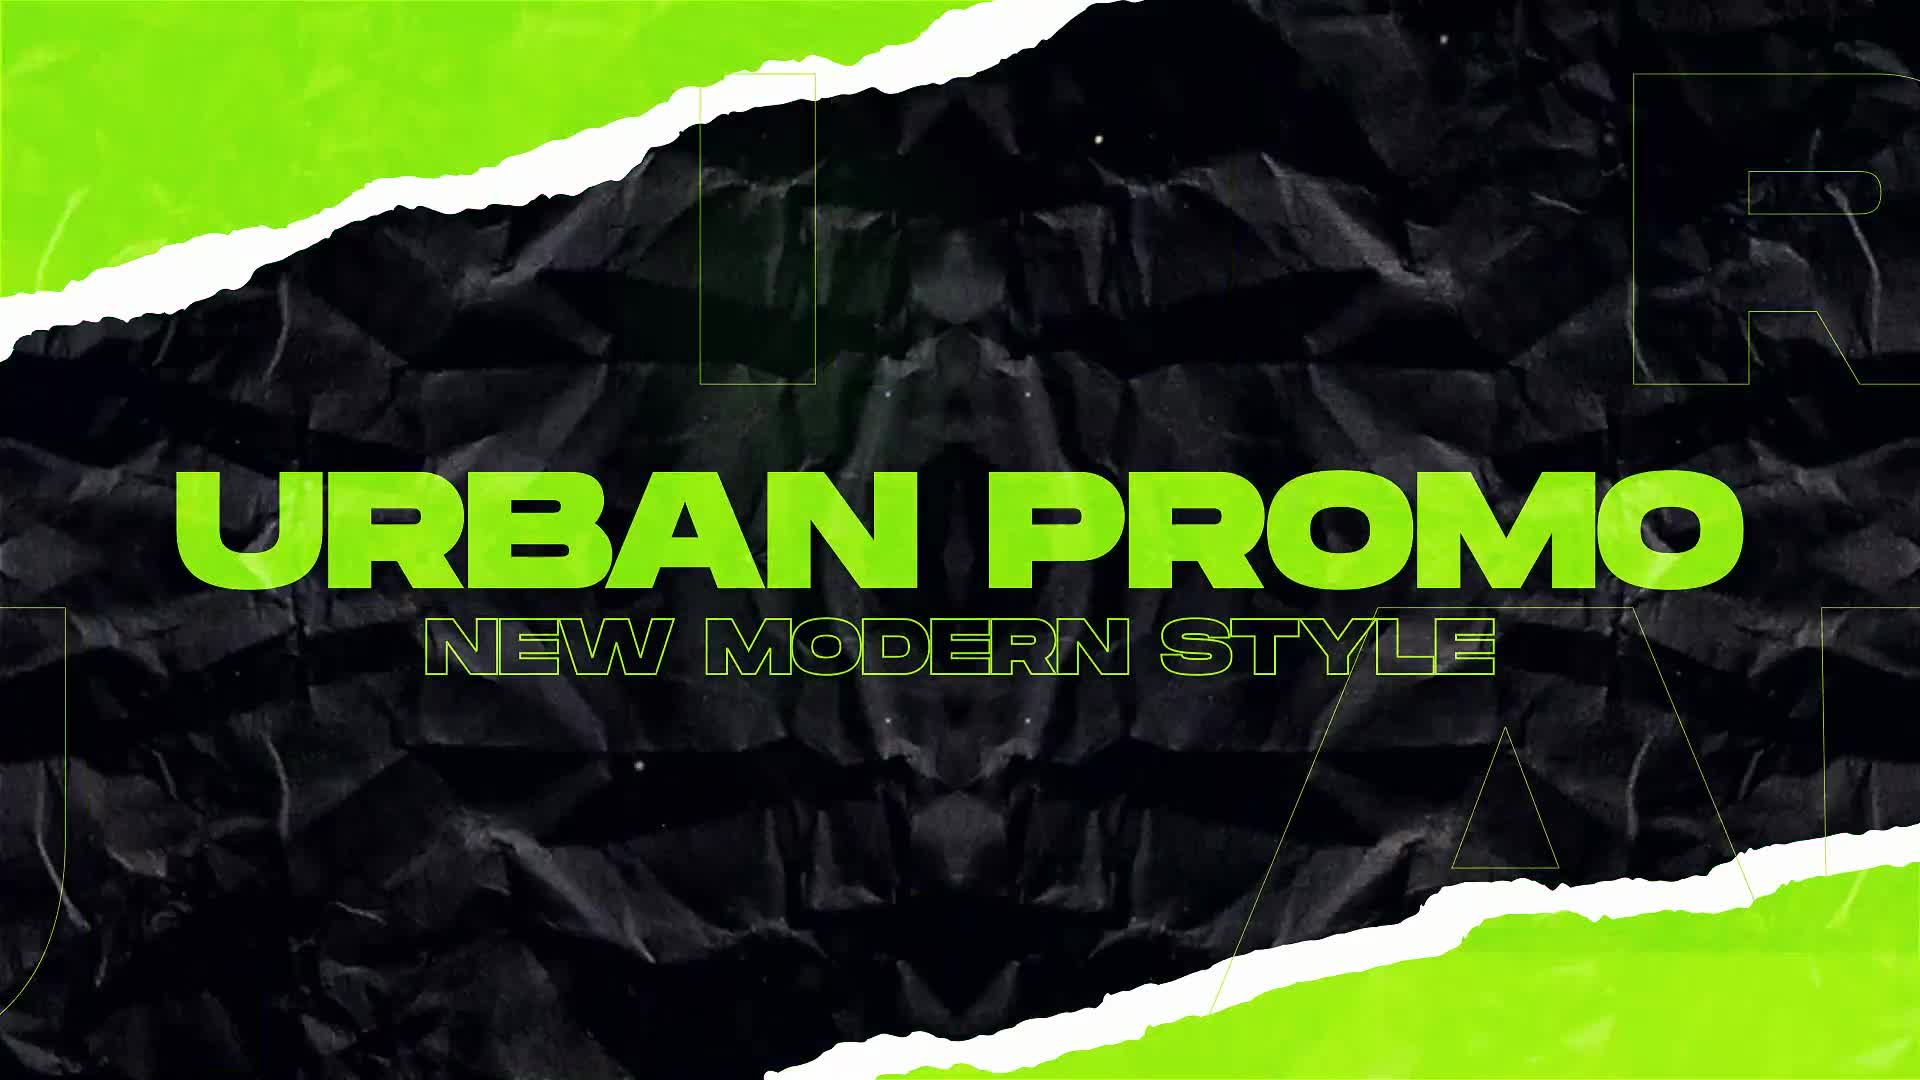 Fashion Urban Promo Videohive 29892813 Premiere Pro Image 1